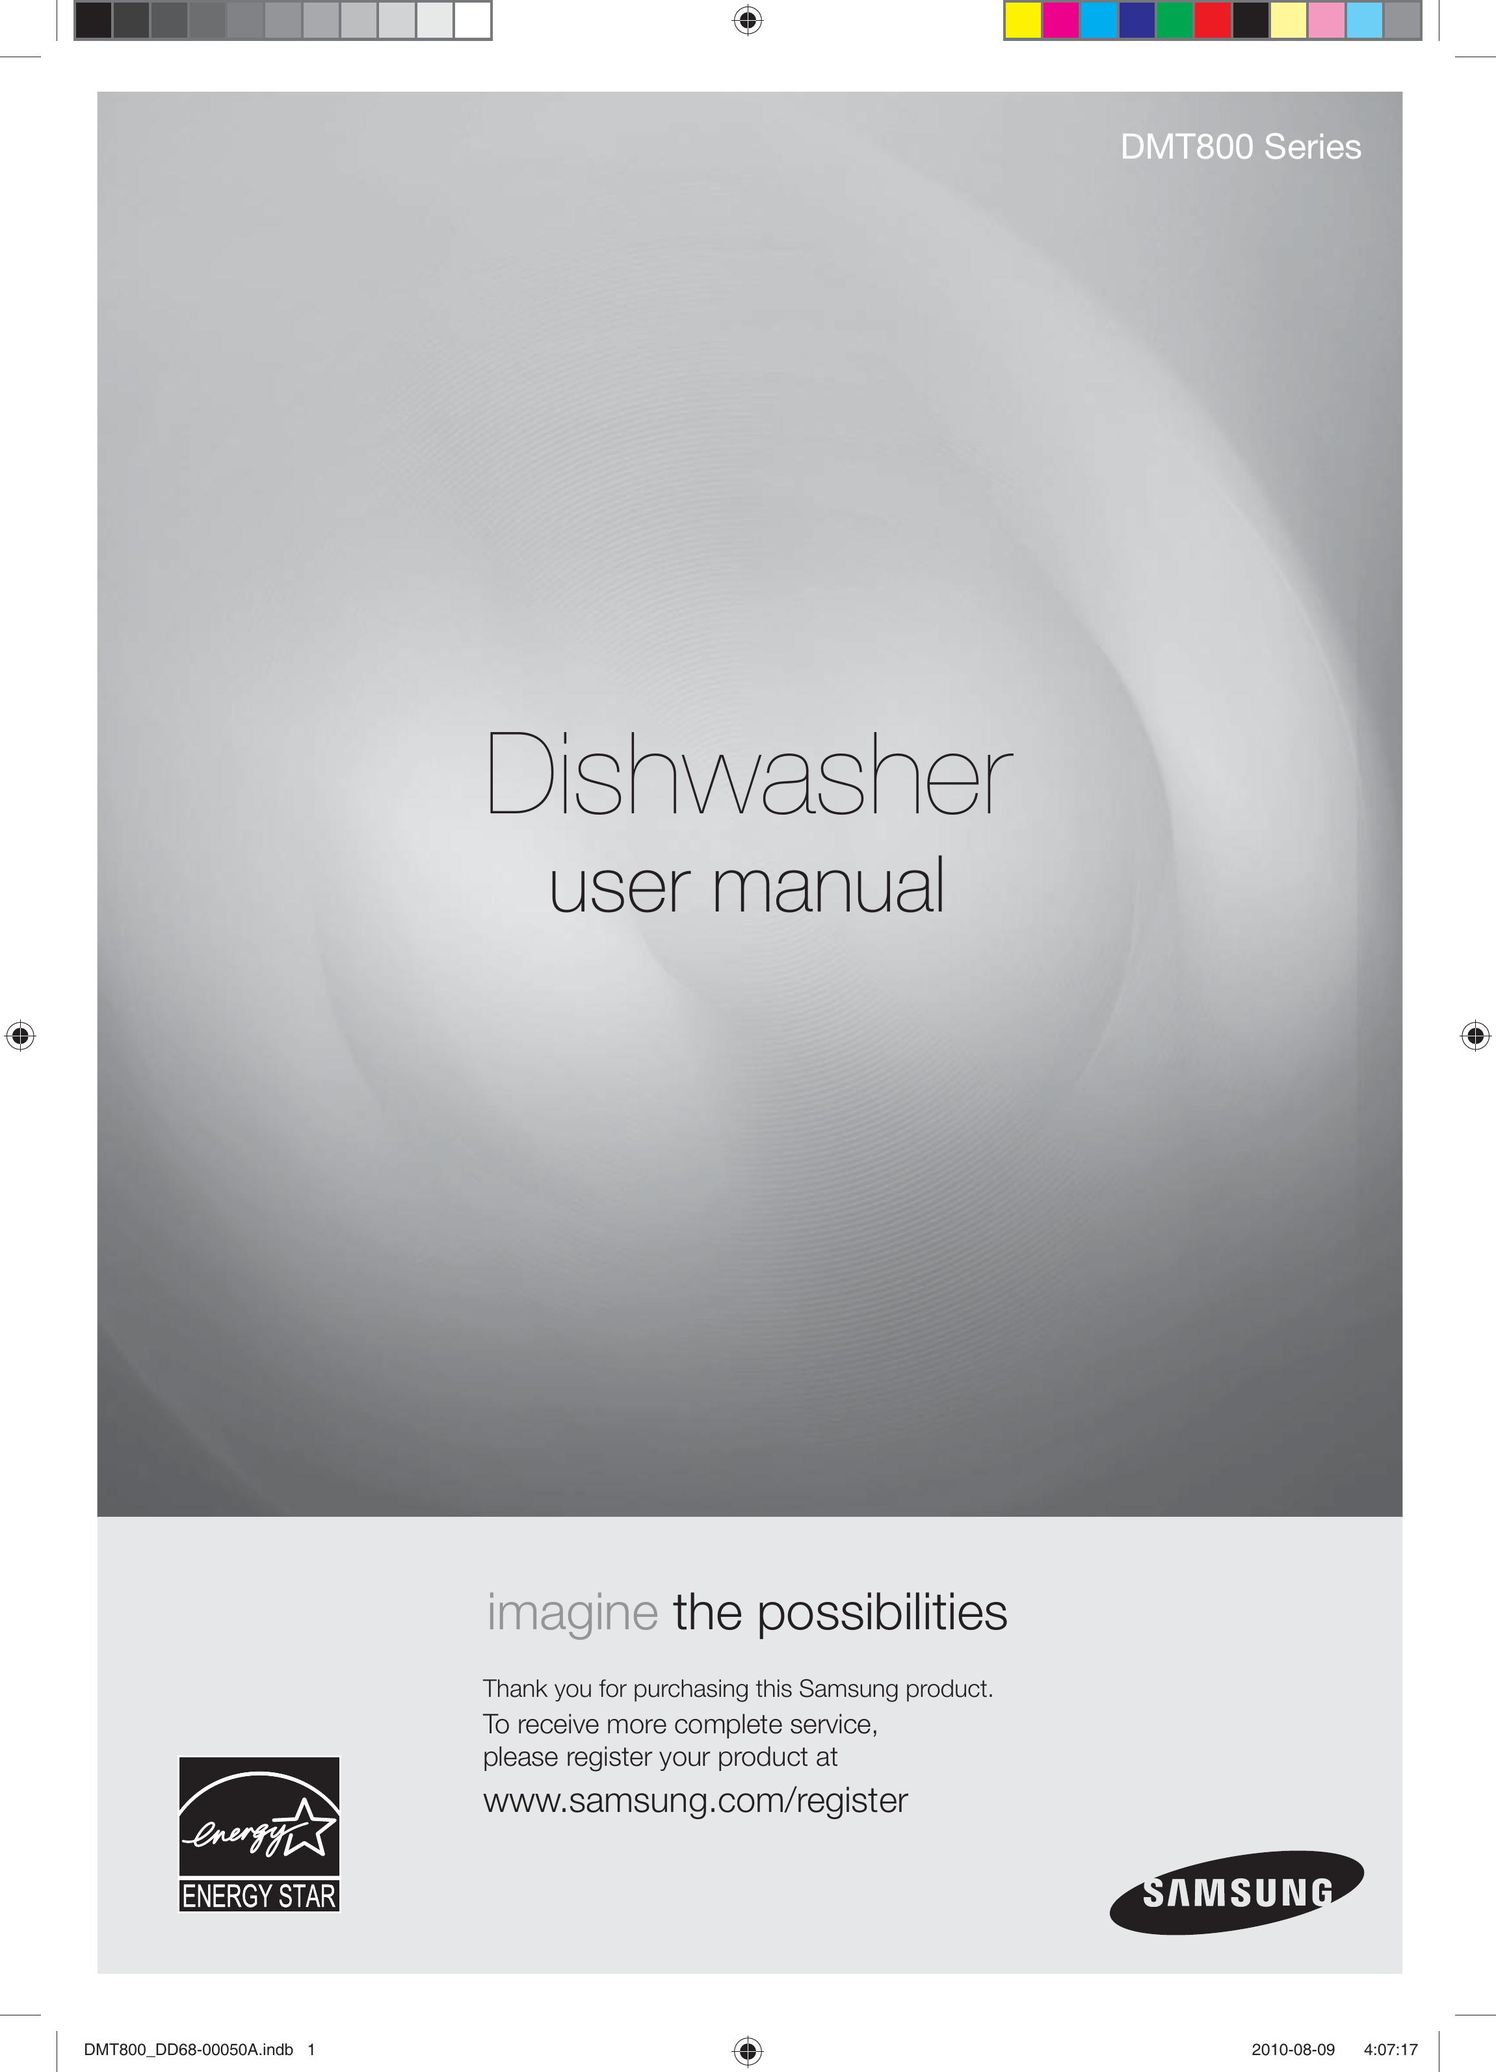 Samsung DMT800DD6800050A Dishwasher User Manual